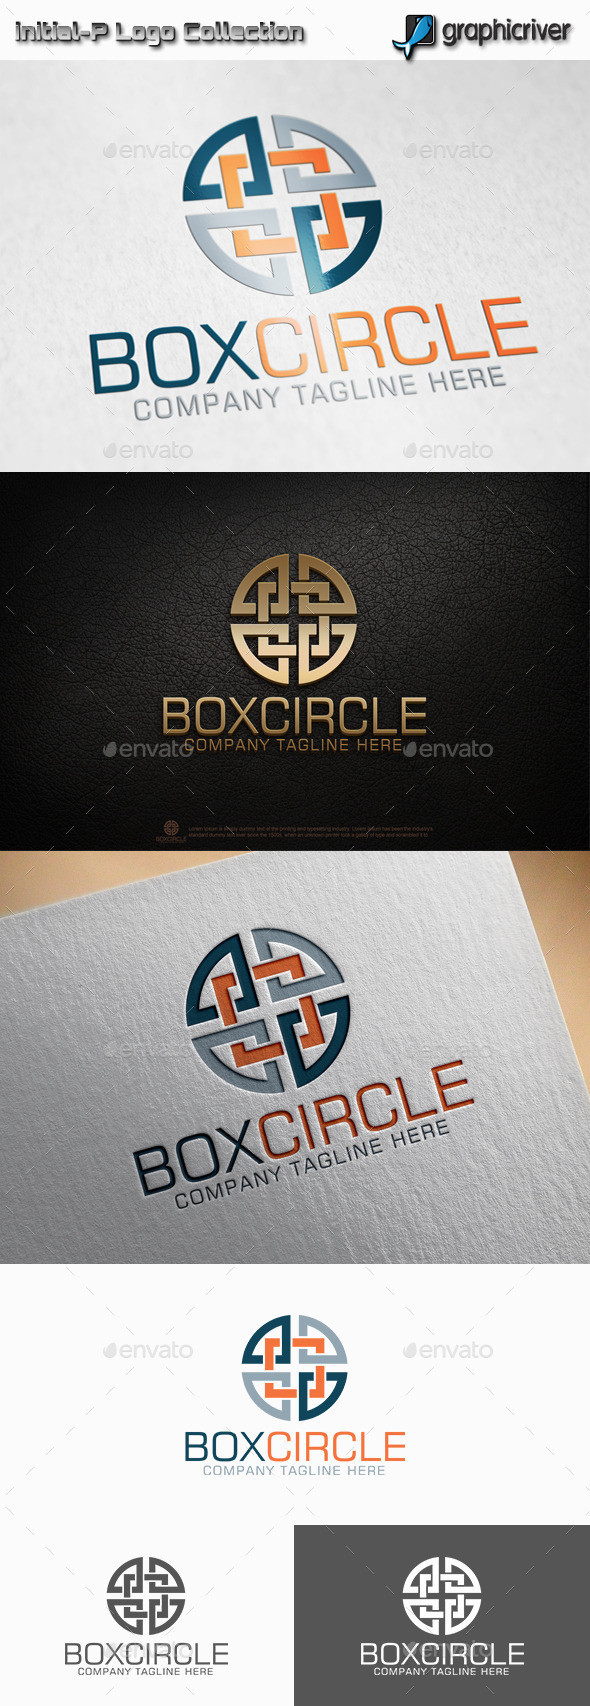 Box 20circle 20preview